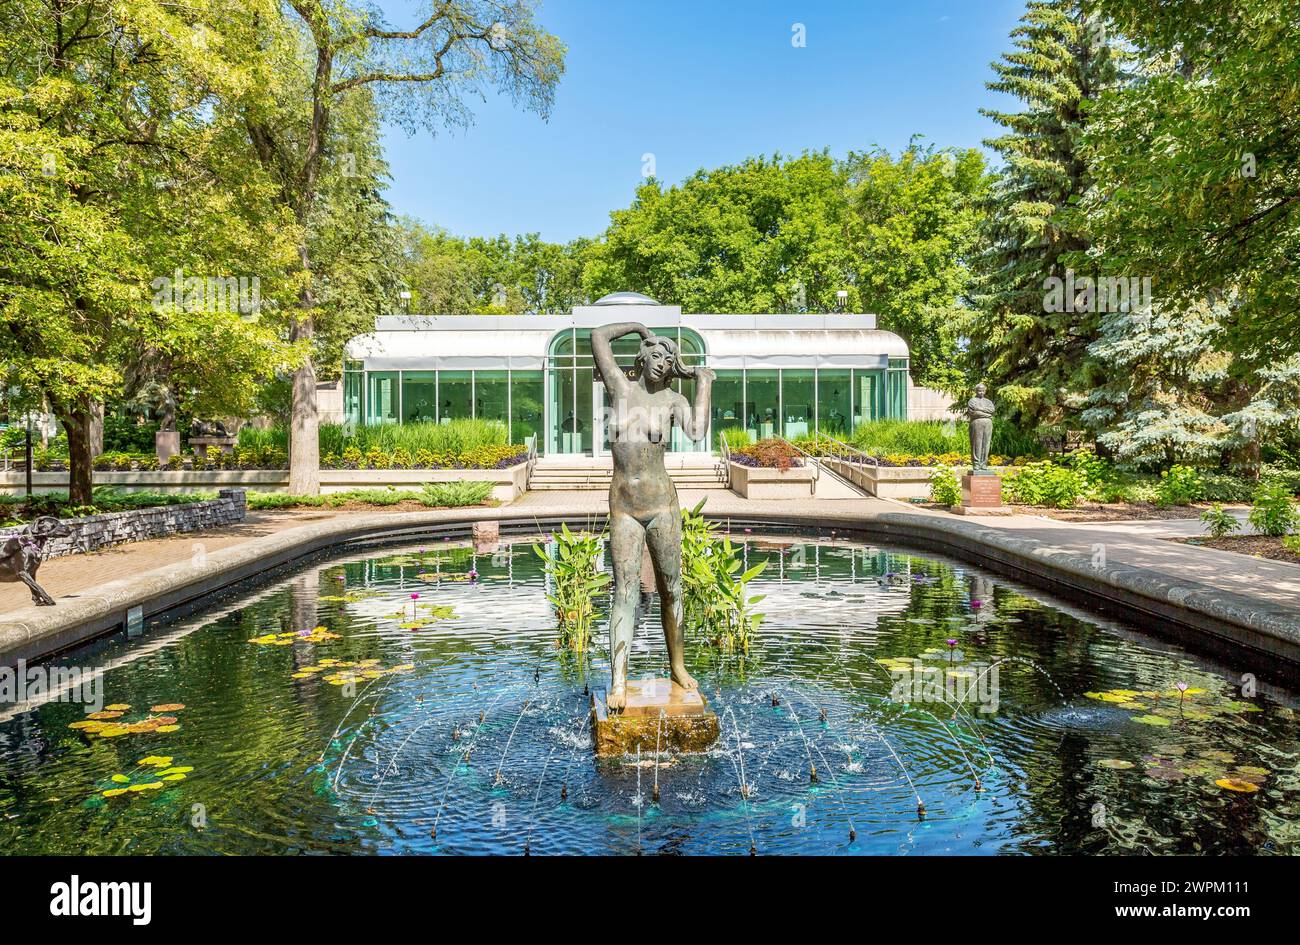 Le jardin et la galerie de sculptures Leo Mol exposant les œuvres du sculpteur ukrainien Leo Mol qui s'est installé au Canada en 1948, au parc Assiniboine, à Winnipeg Banque D'Images